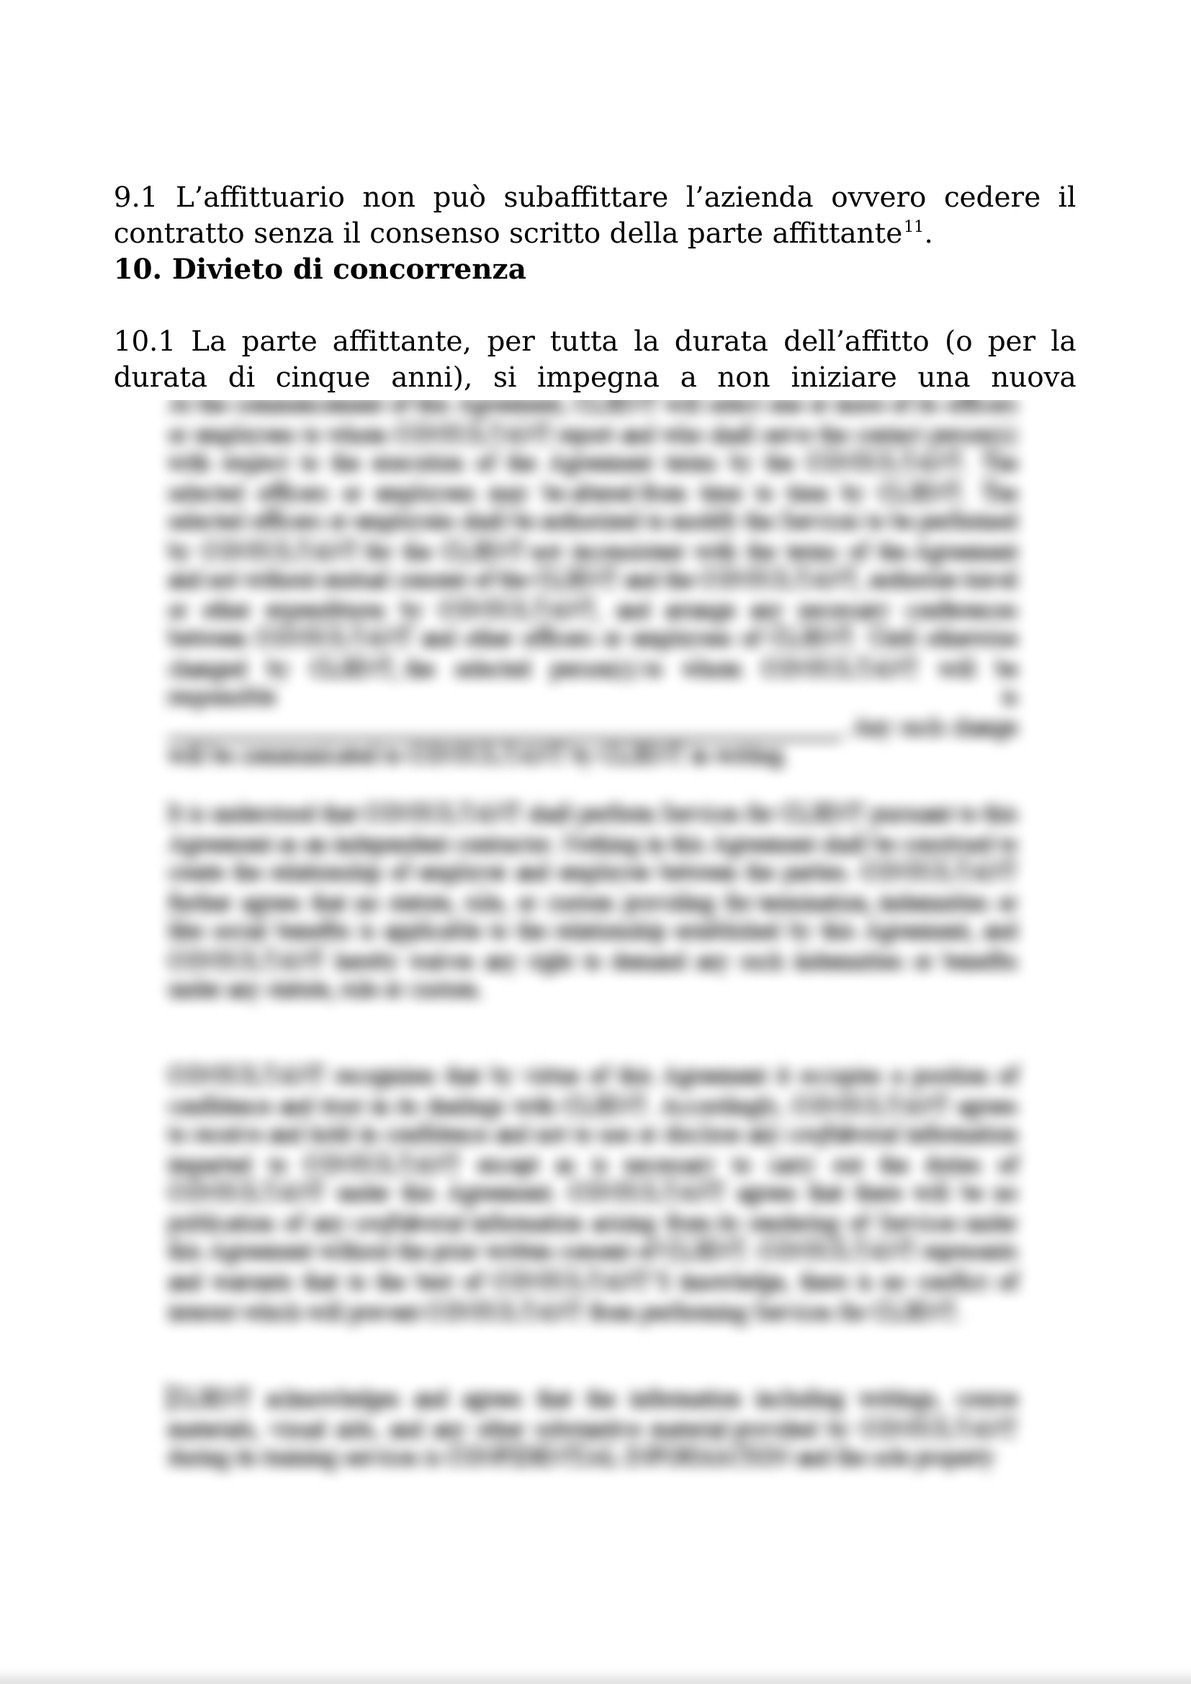 RENTAL AGREEMENT  FOR THE COMPANY AND BUSINESS UNITS / CONTRATTO DI AFFITTO DI AZIENDA O DI UN RAMO DI ESSA-4